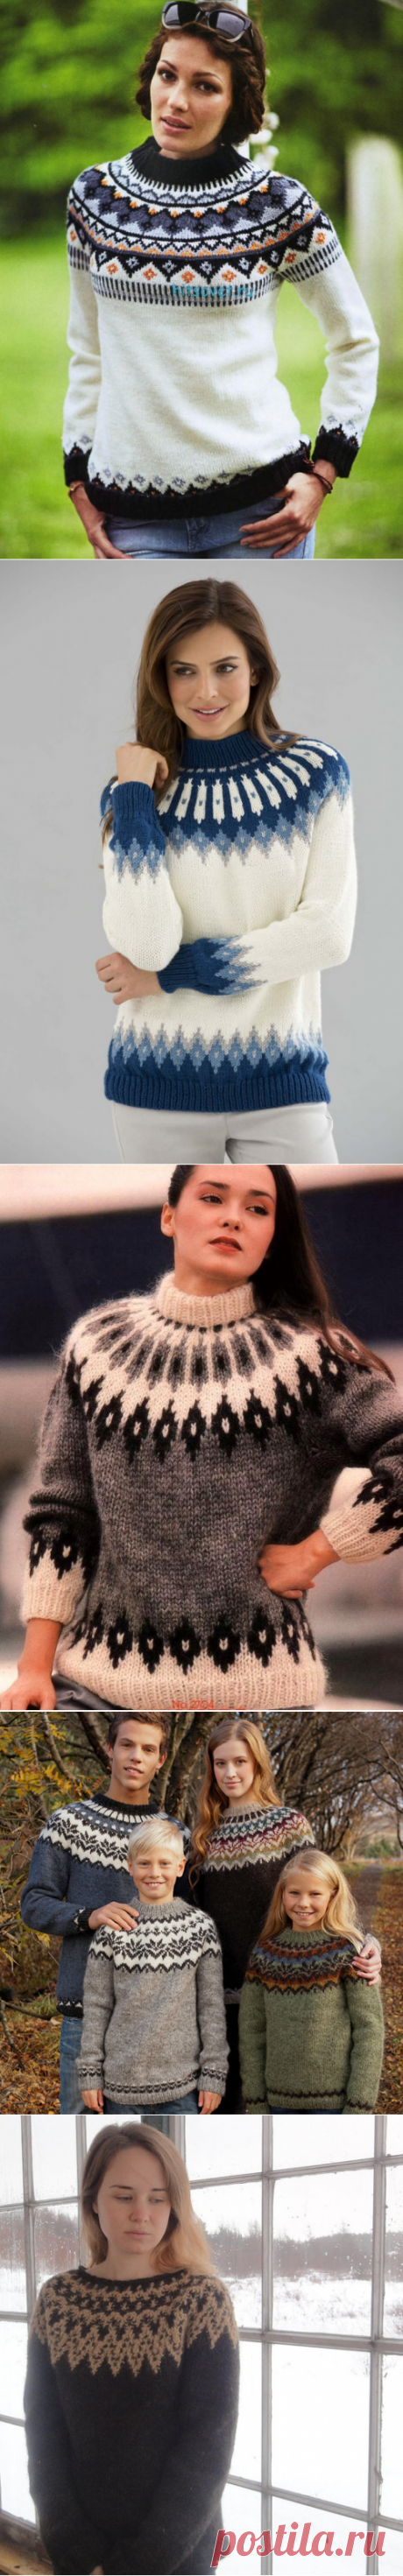 Жаккардовые пуловеры с круглой кокеткой спицами — Рукоделие